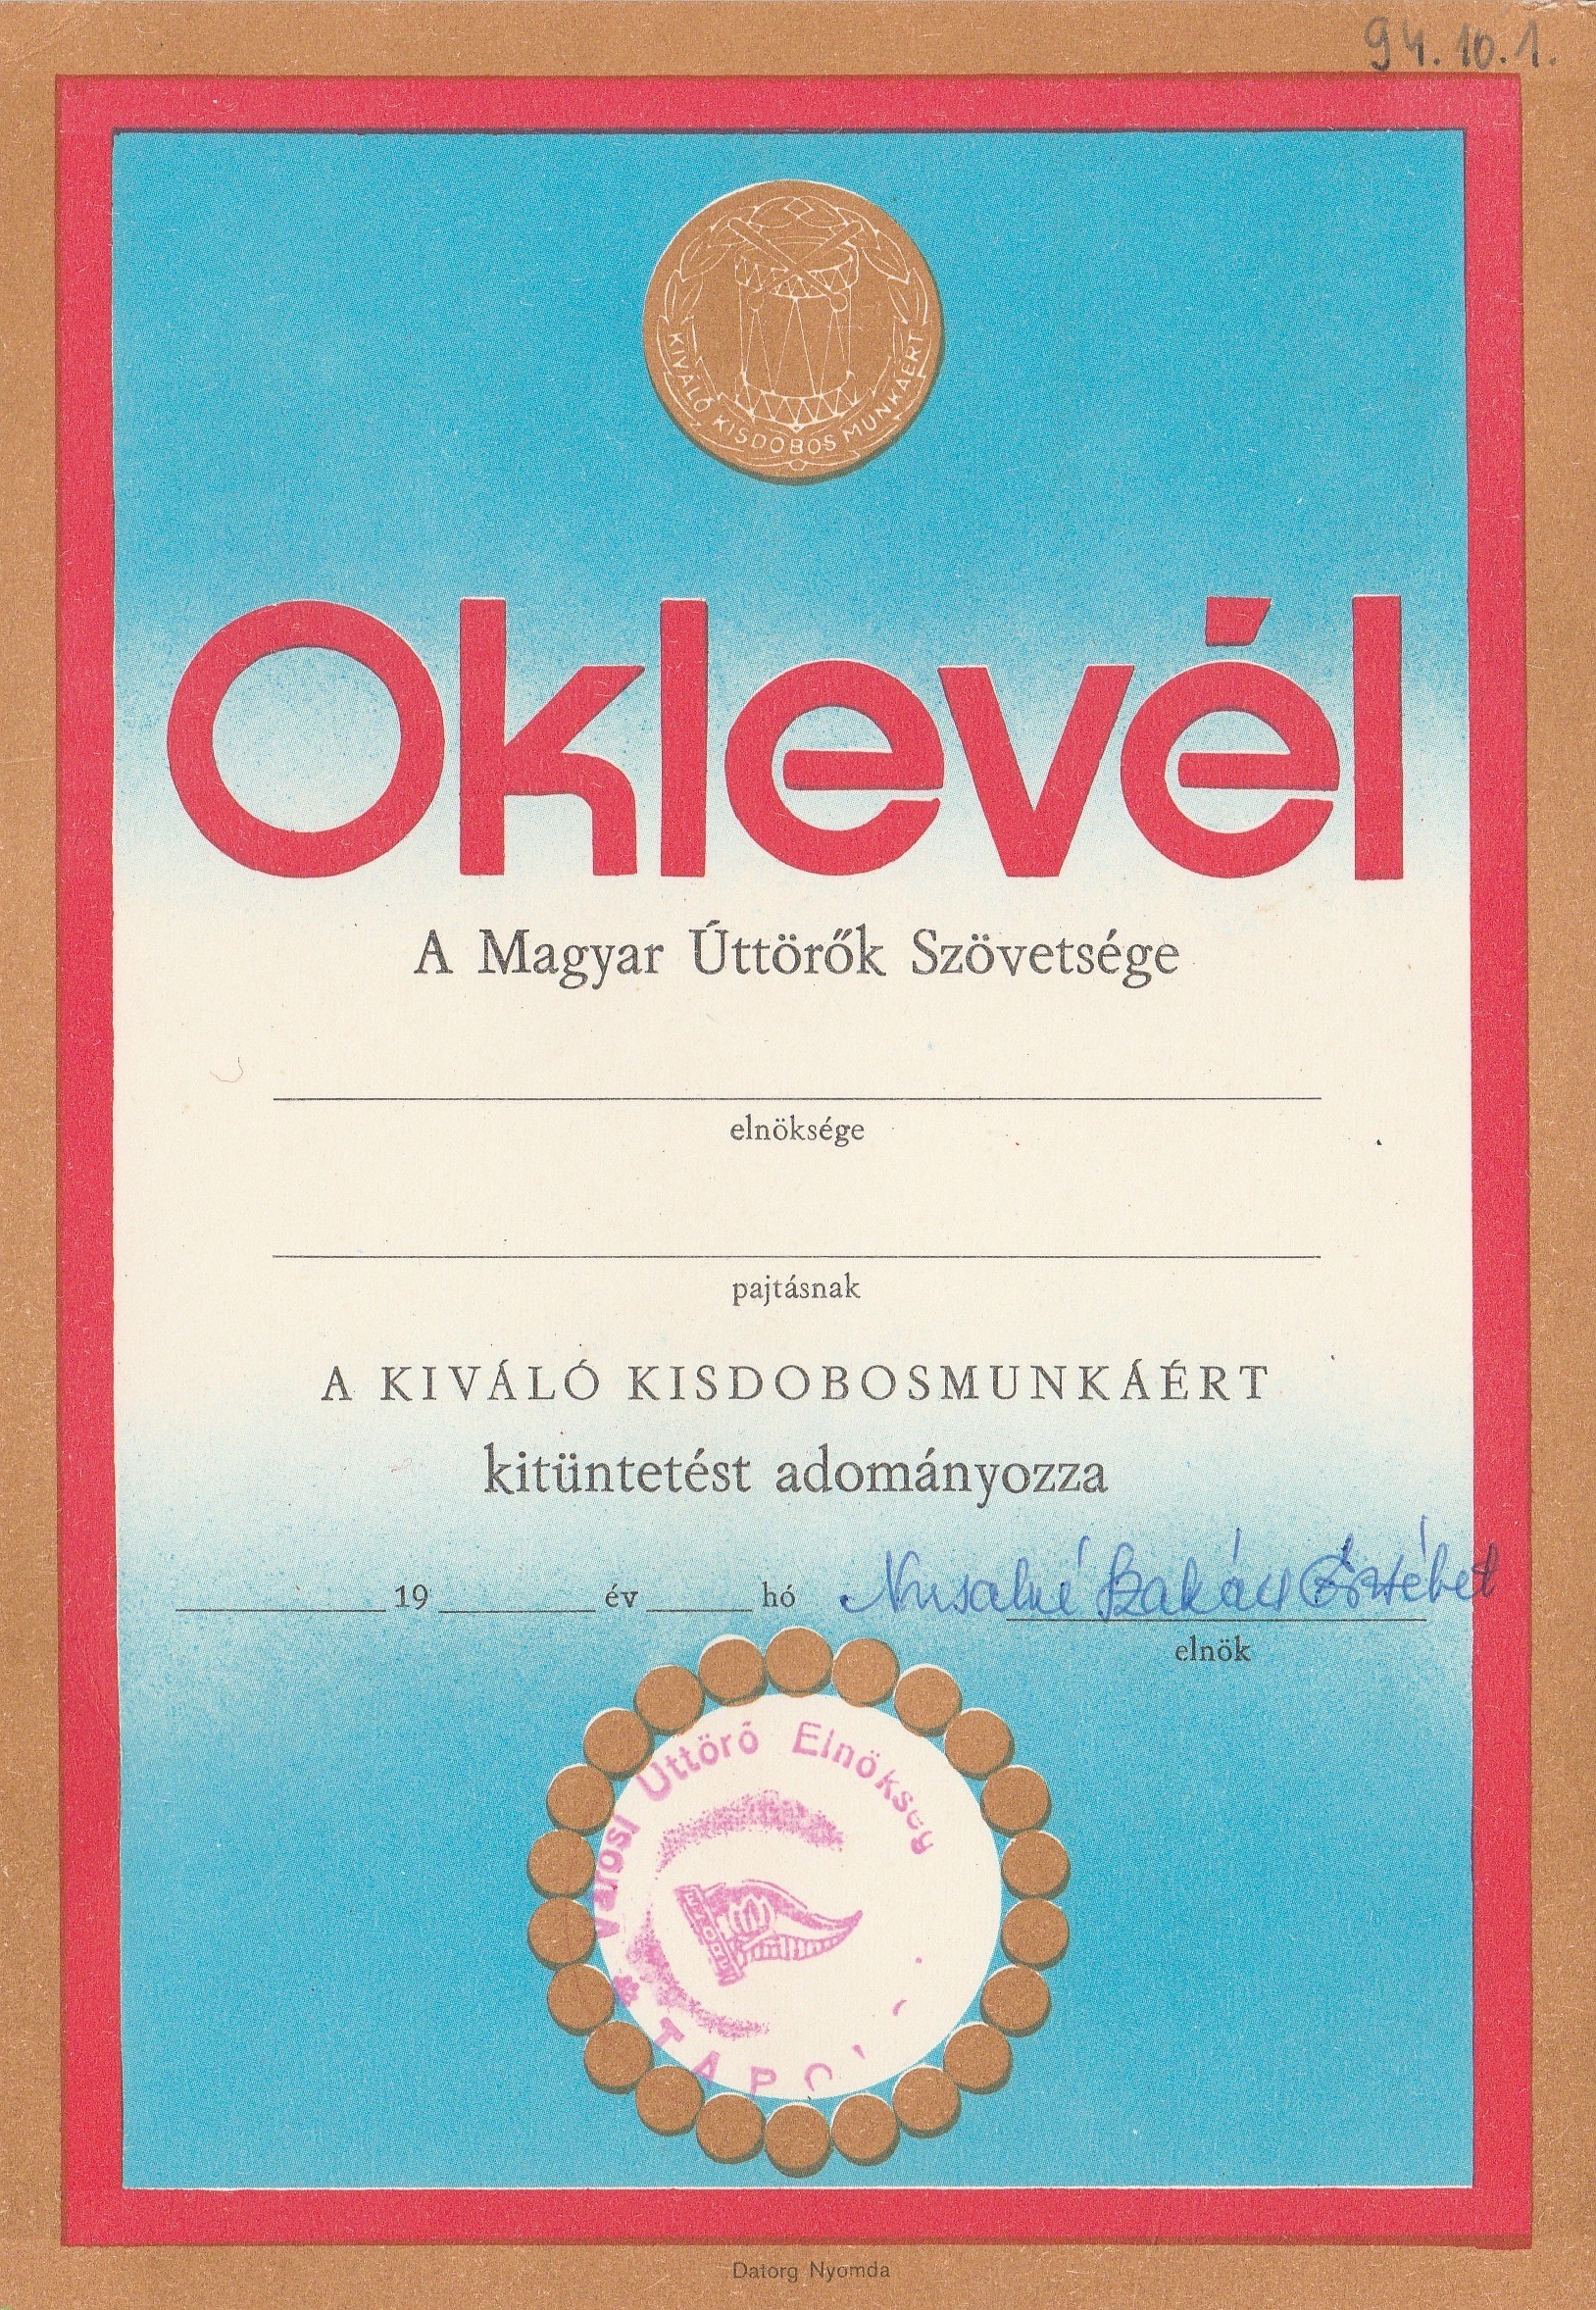 Kiváló kisdobosmunkáért kitüntetés oklevele (Tapolcai Városi Múzeum CC BY-NC-SA)